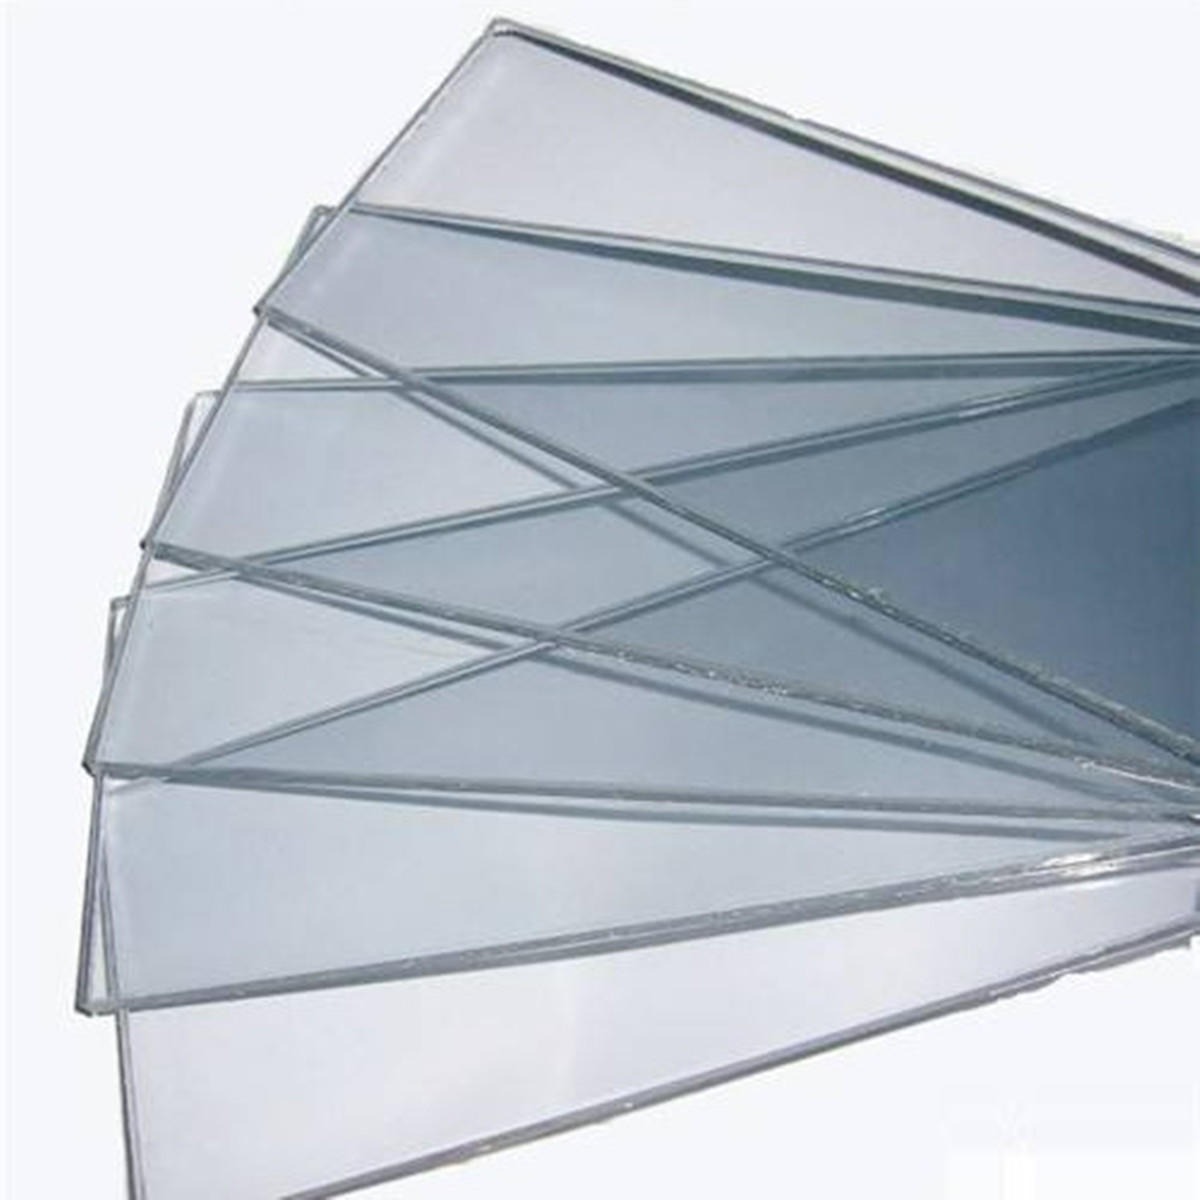 激光内雕玻璃图片-玻璃图库-中玻网